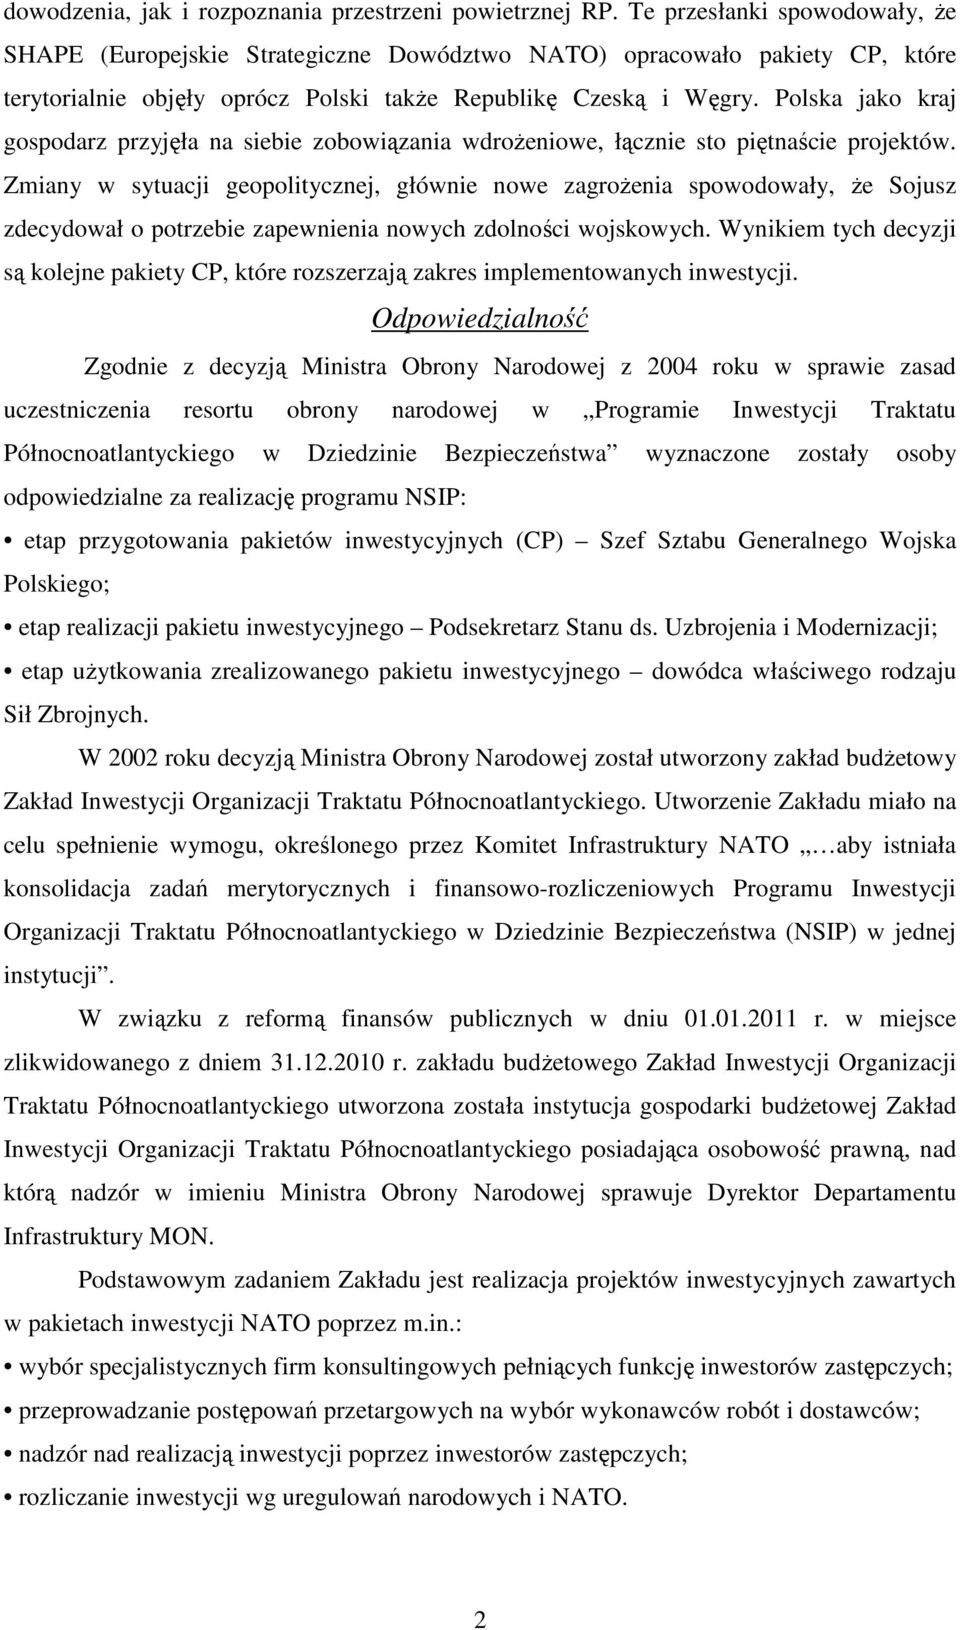 Polska jako kraj gospodarz przyjęła na siebie zobowiązania wdroŝeniowe, łącznie sto piętnaście projektów.